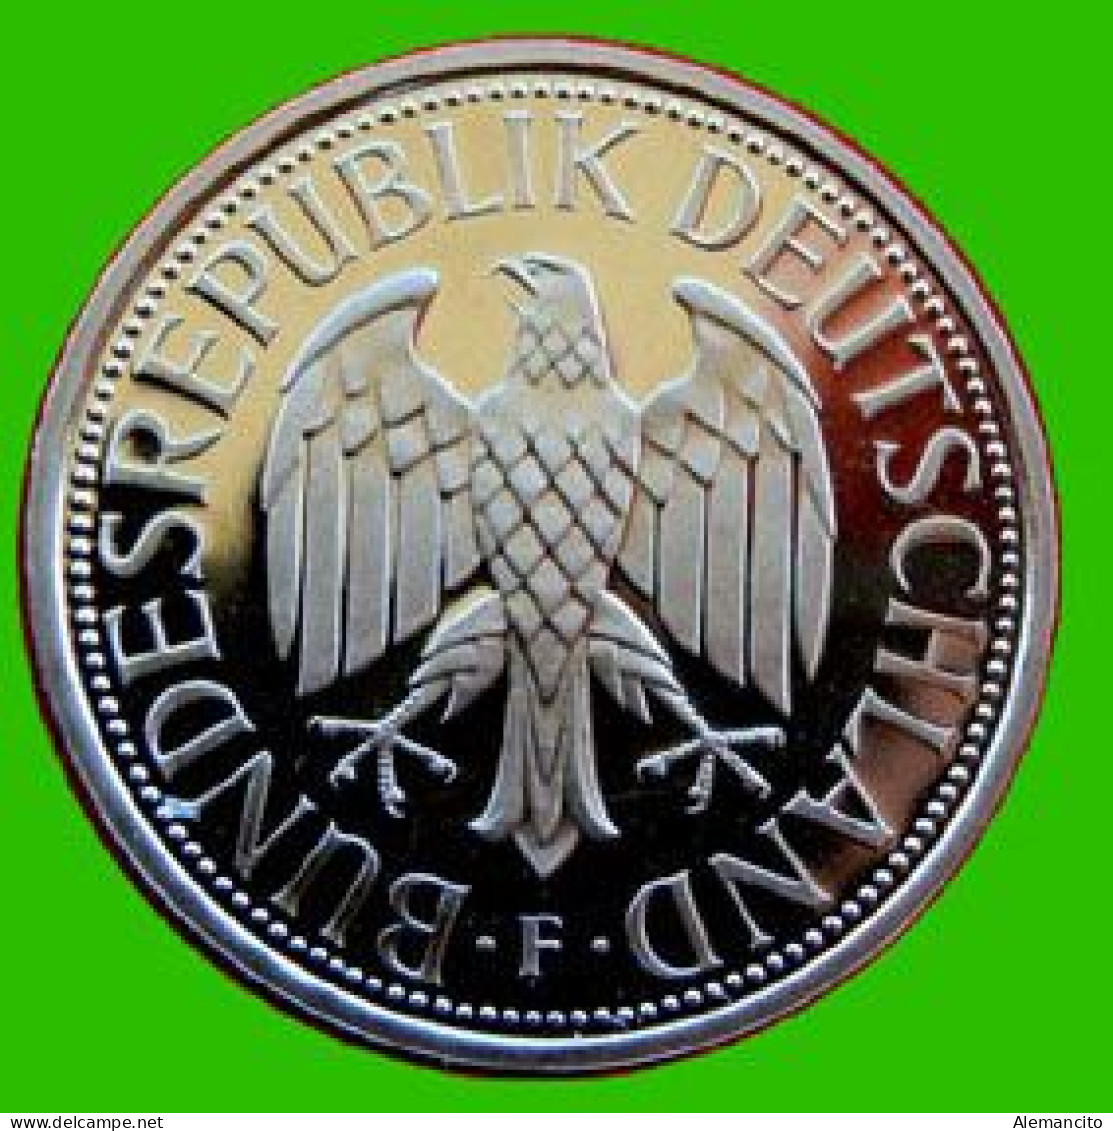 ALEMANIA - DEUTSCHLAND - GERMANY - 2 -MONEDAS DE 1.00 DM ESPIGAS Y AGUILA DEL AÑO 1975 CON LAS CECAS - F.- G - 1 Mark